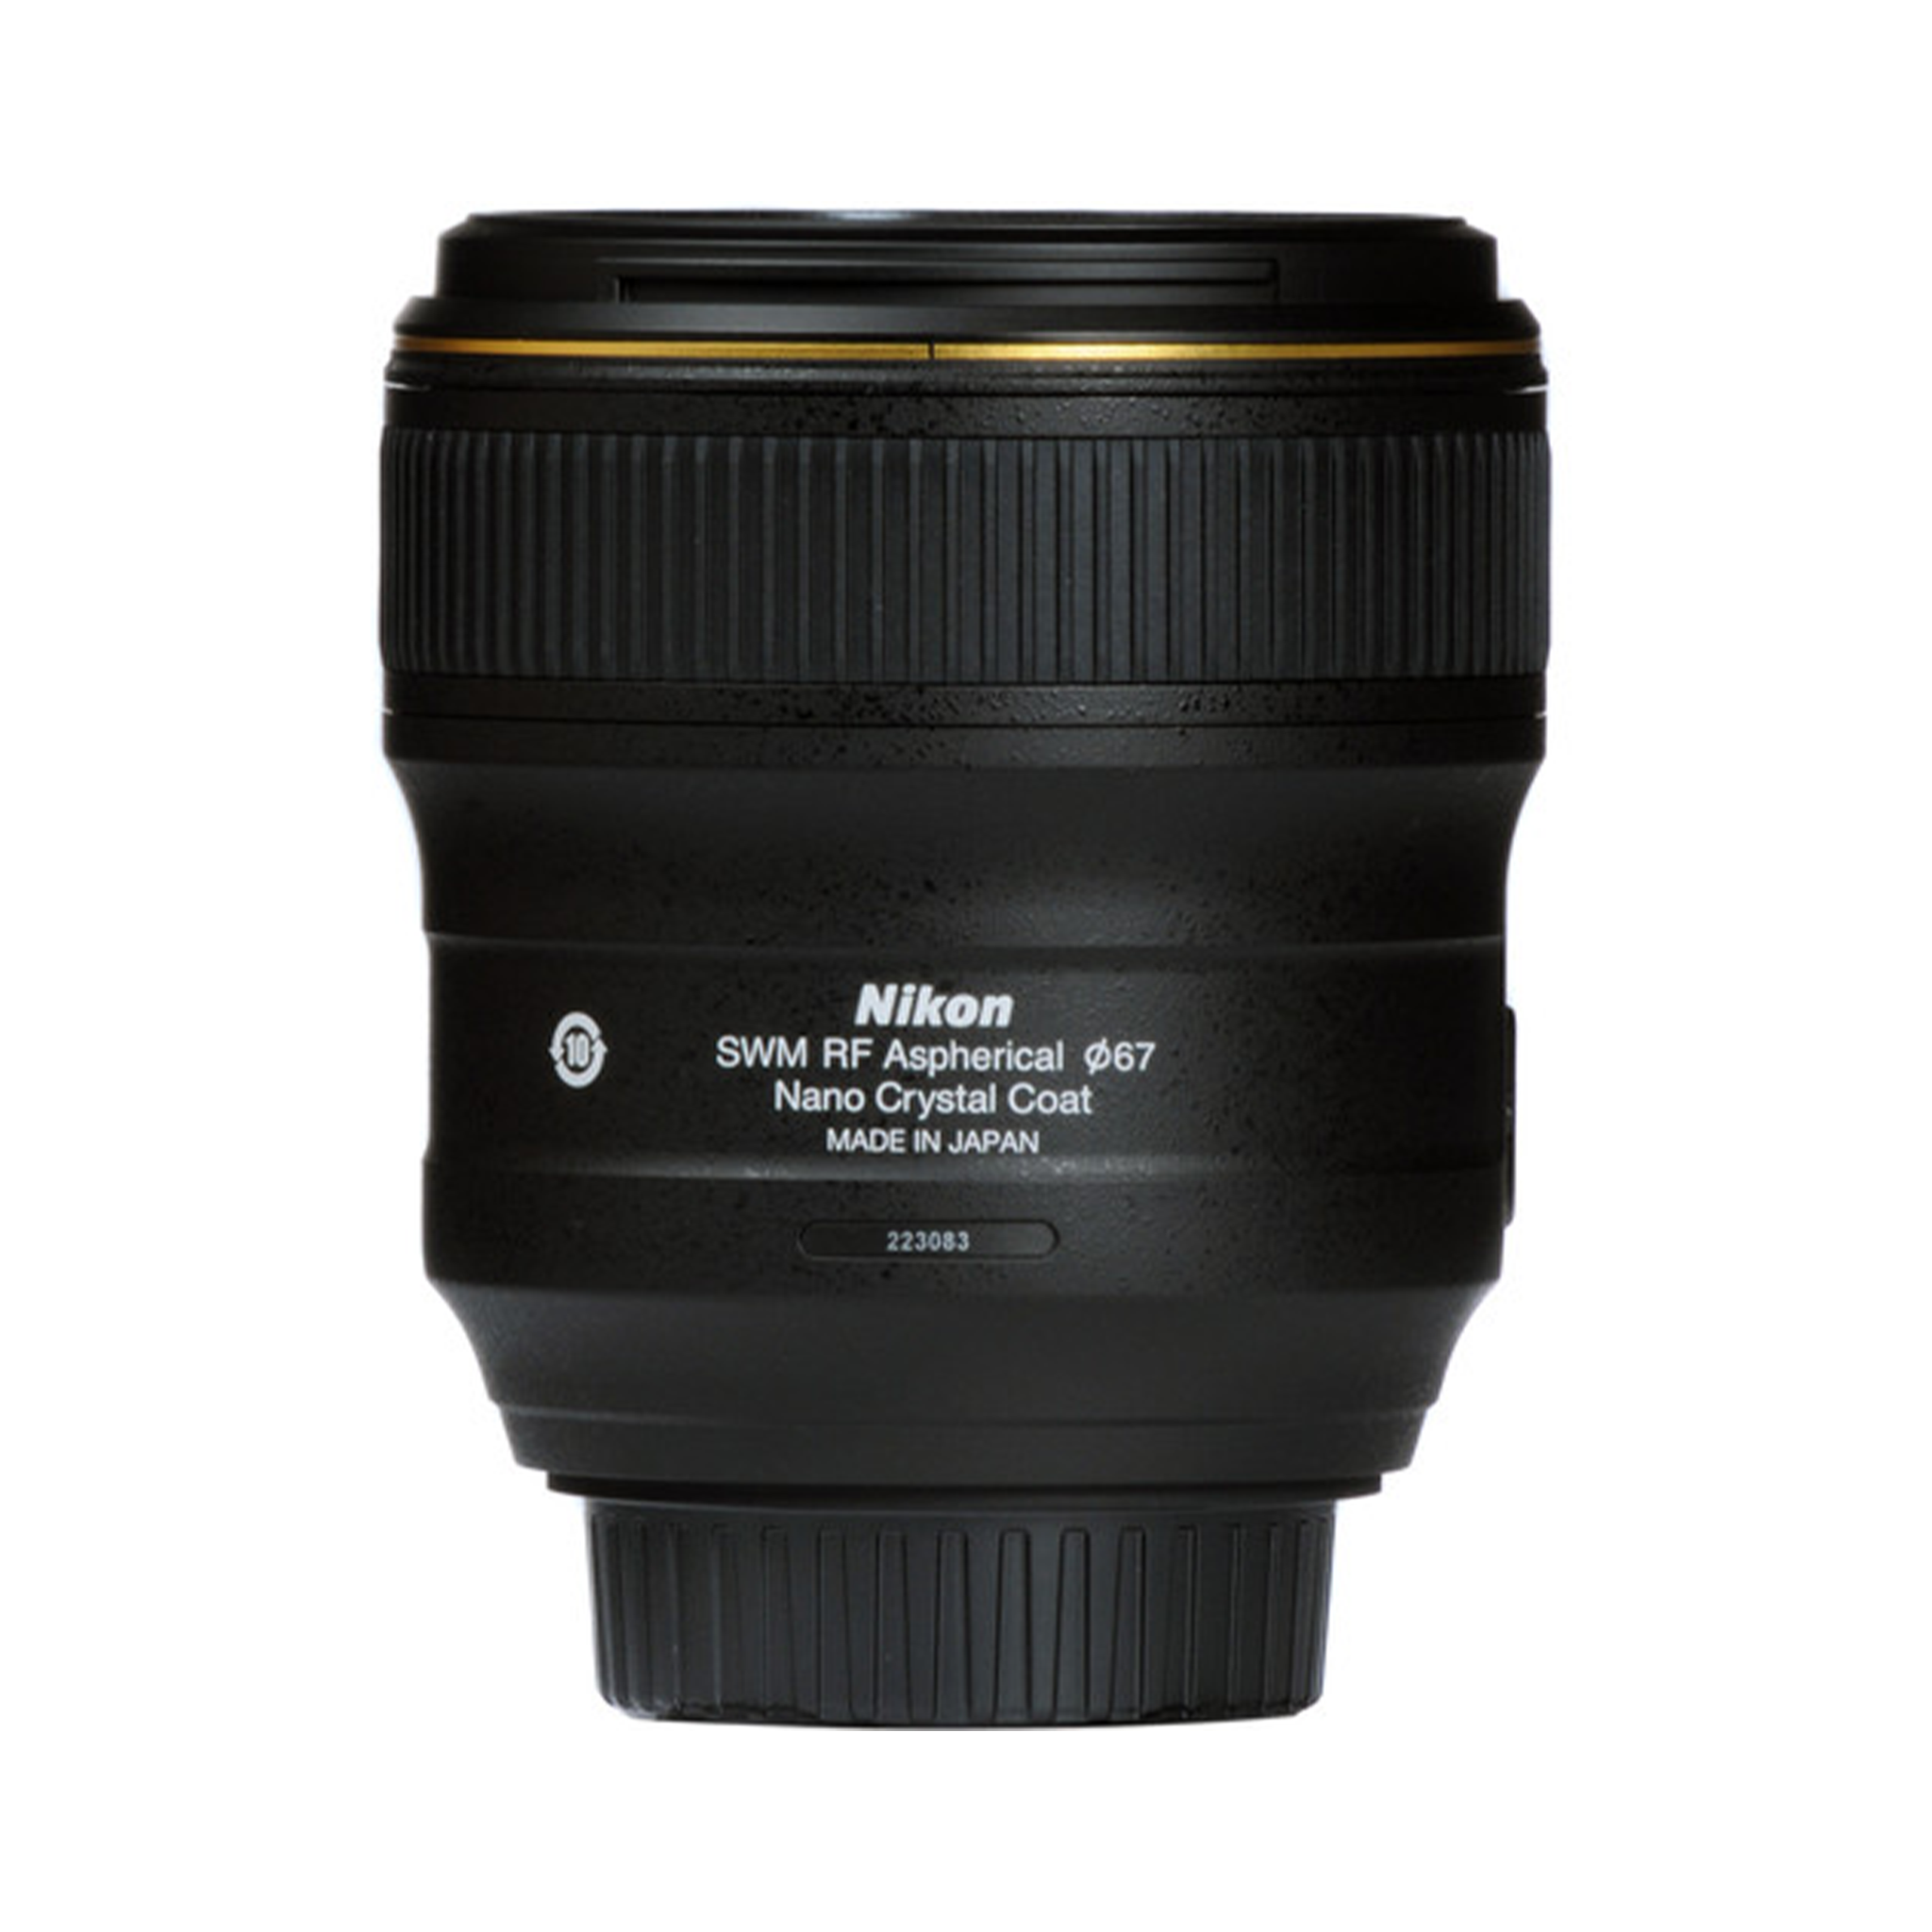 Nikon AF-S NIKKOR 35mm f/1.4G Lens-Camera Lenses-futuromic